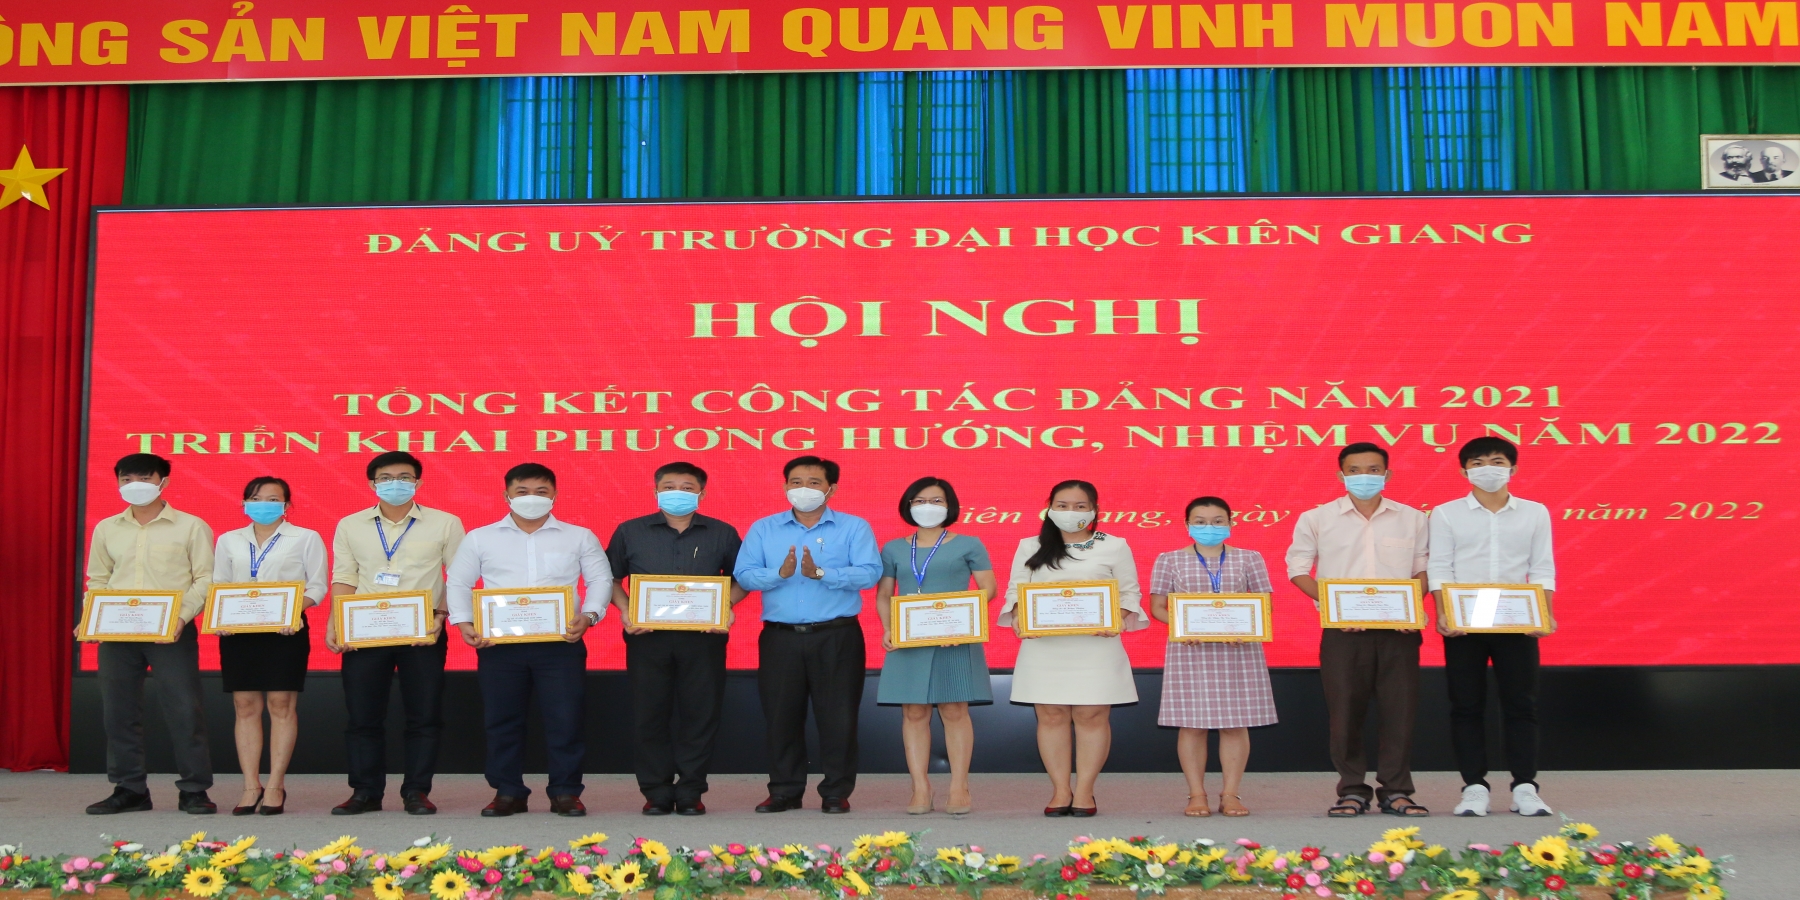 Đảng ủy Trường Đại học Kiên Giang đẩy mạnh chuyển đổi số, nâng cao chất lượng tuyển sinh đầu vào